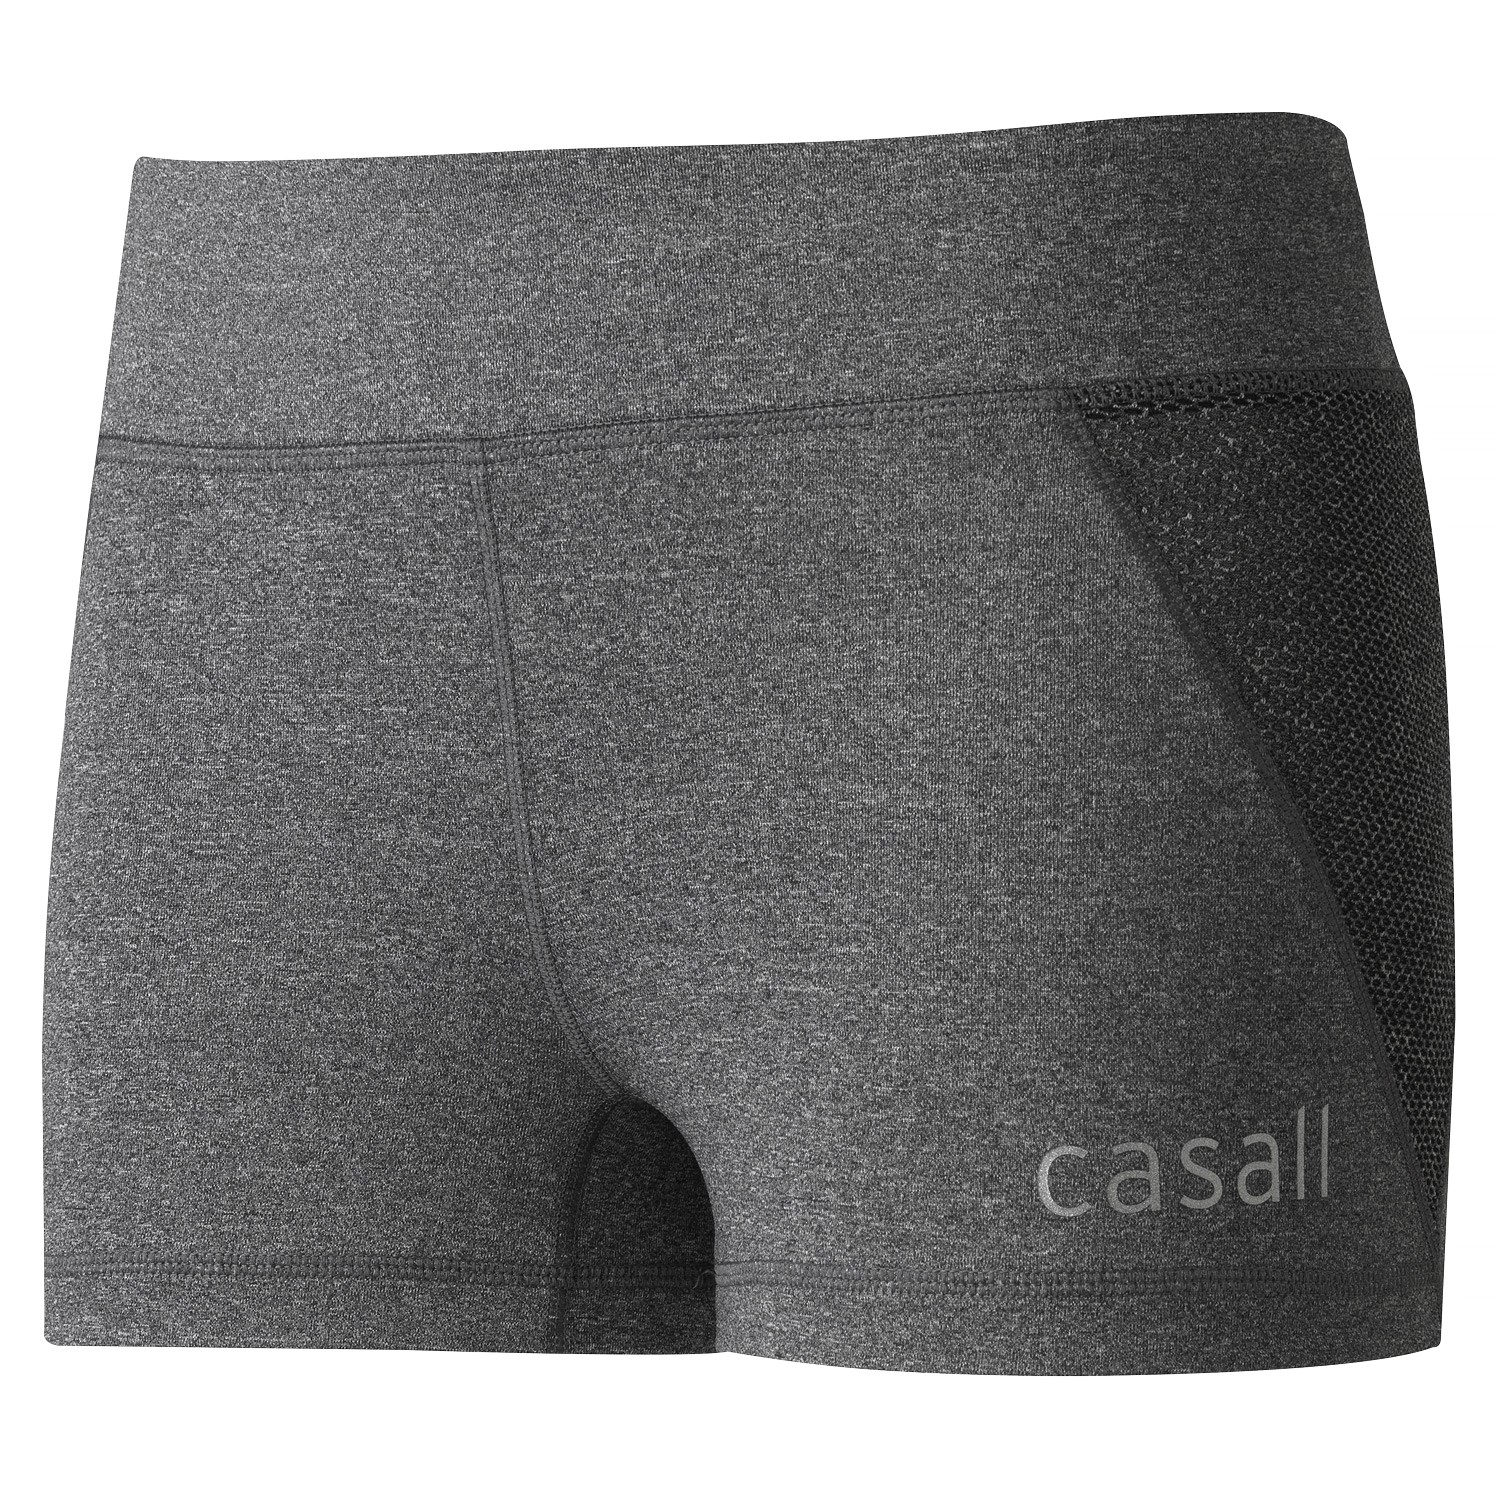 Casall Power Hot Pants